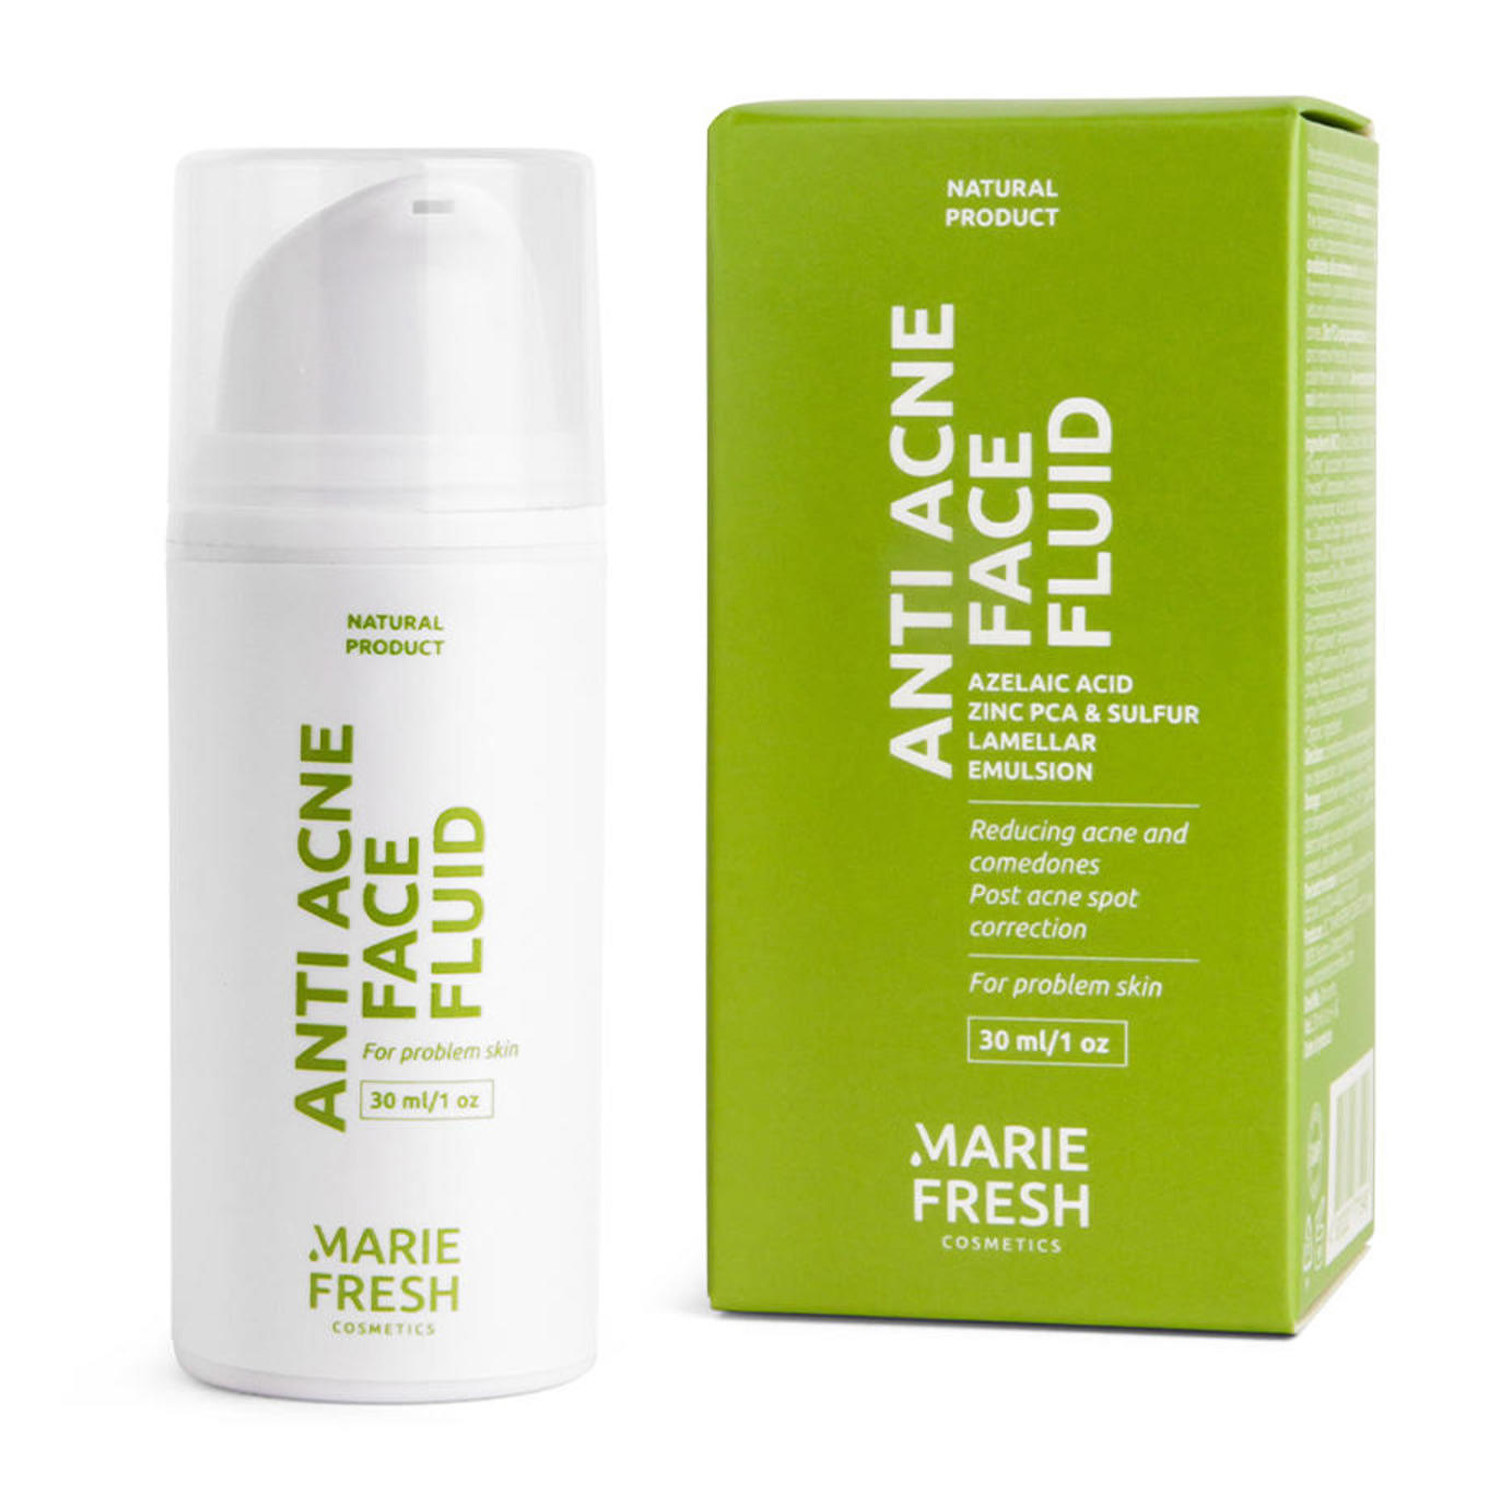 Marie Fresh Cosmetics Anti-Acne Fluid Cream With Azelaic Acid For Problem Skin - Анти-акне крем-флюїд з азелаїновою кислотою для проблемної шкіри